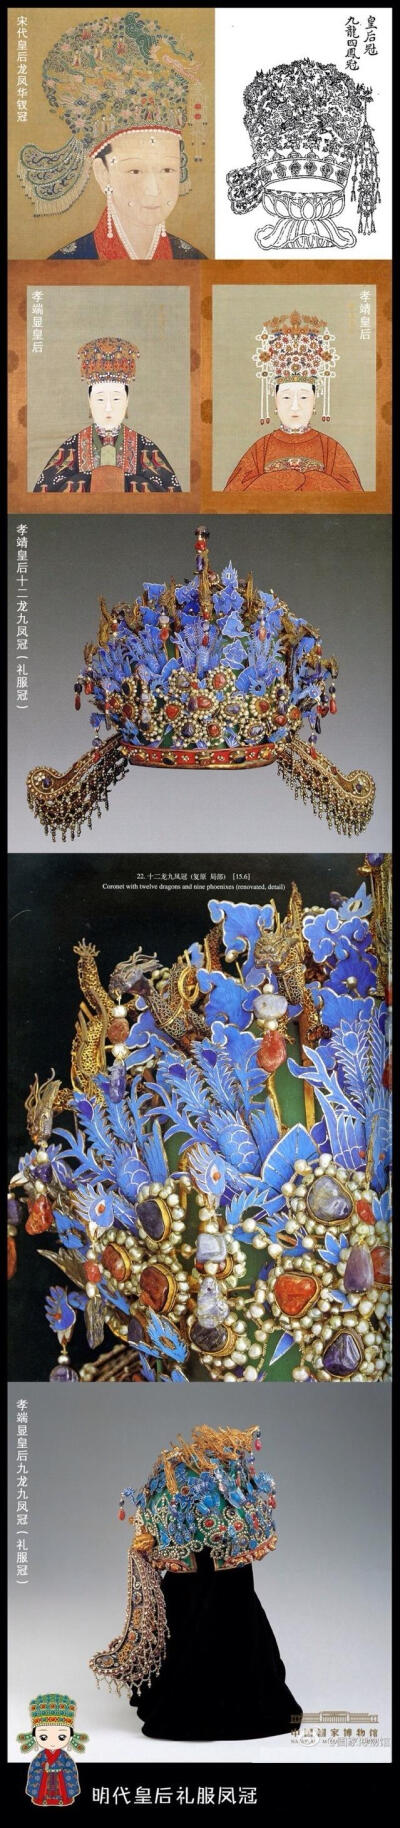 【明代皇后礼服凤冠】明初在宋代皇后龙凤花钗冠的基础上设计了明代